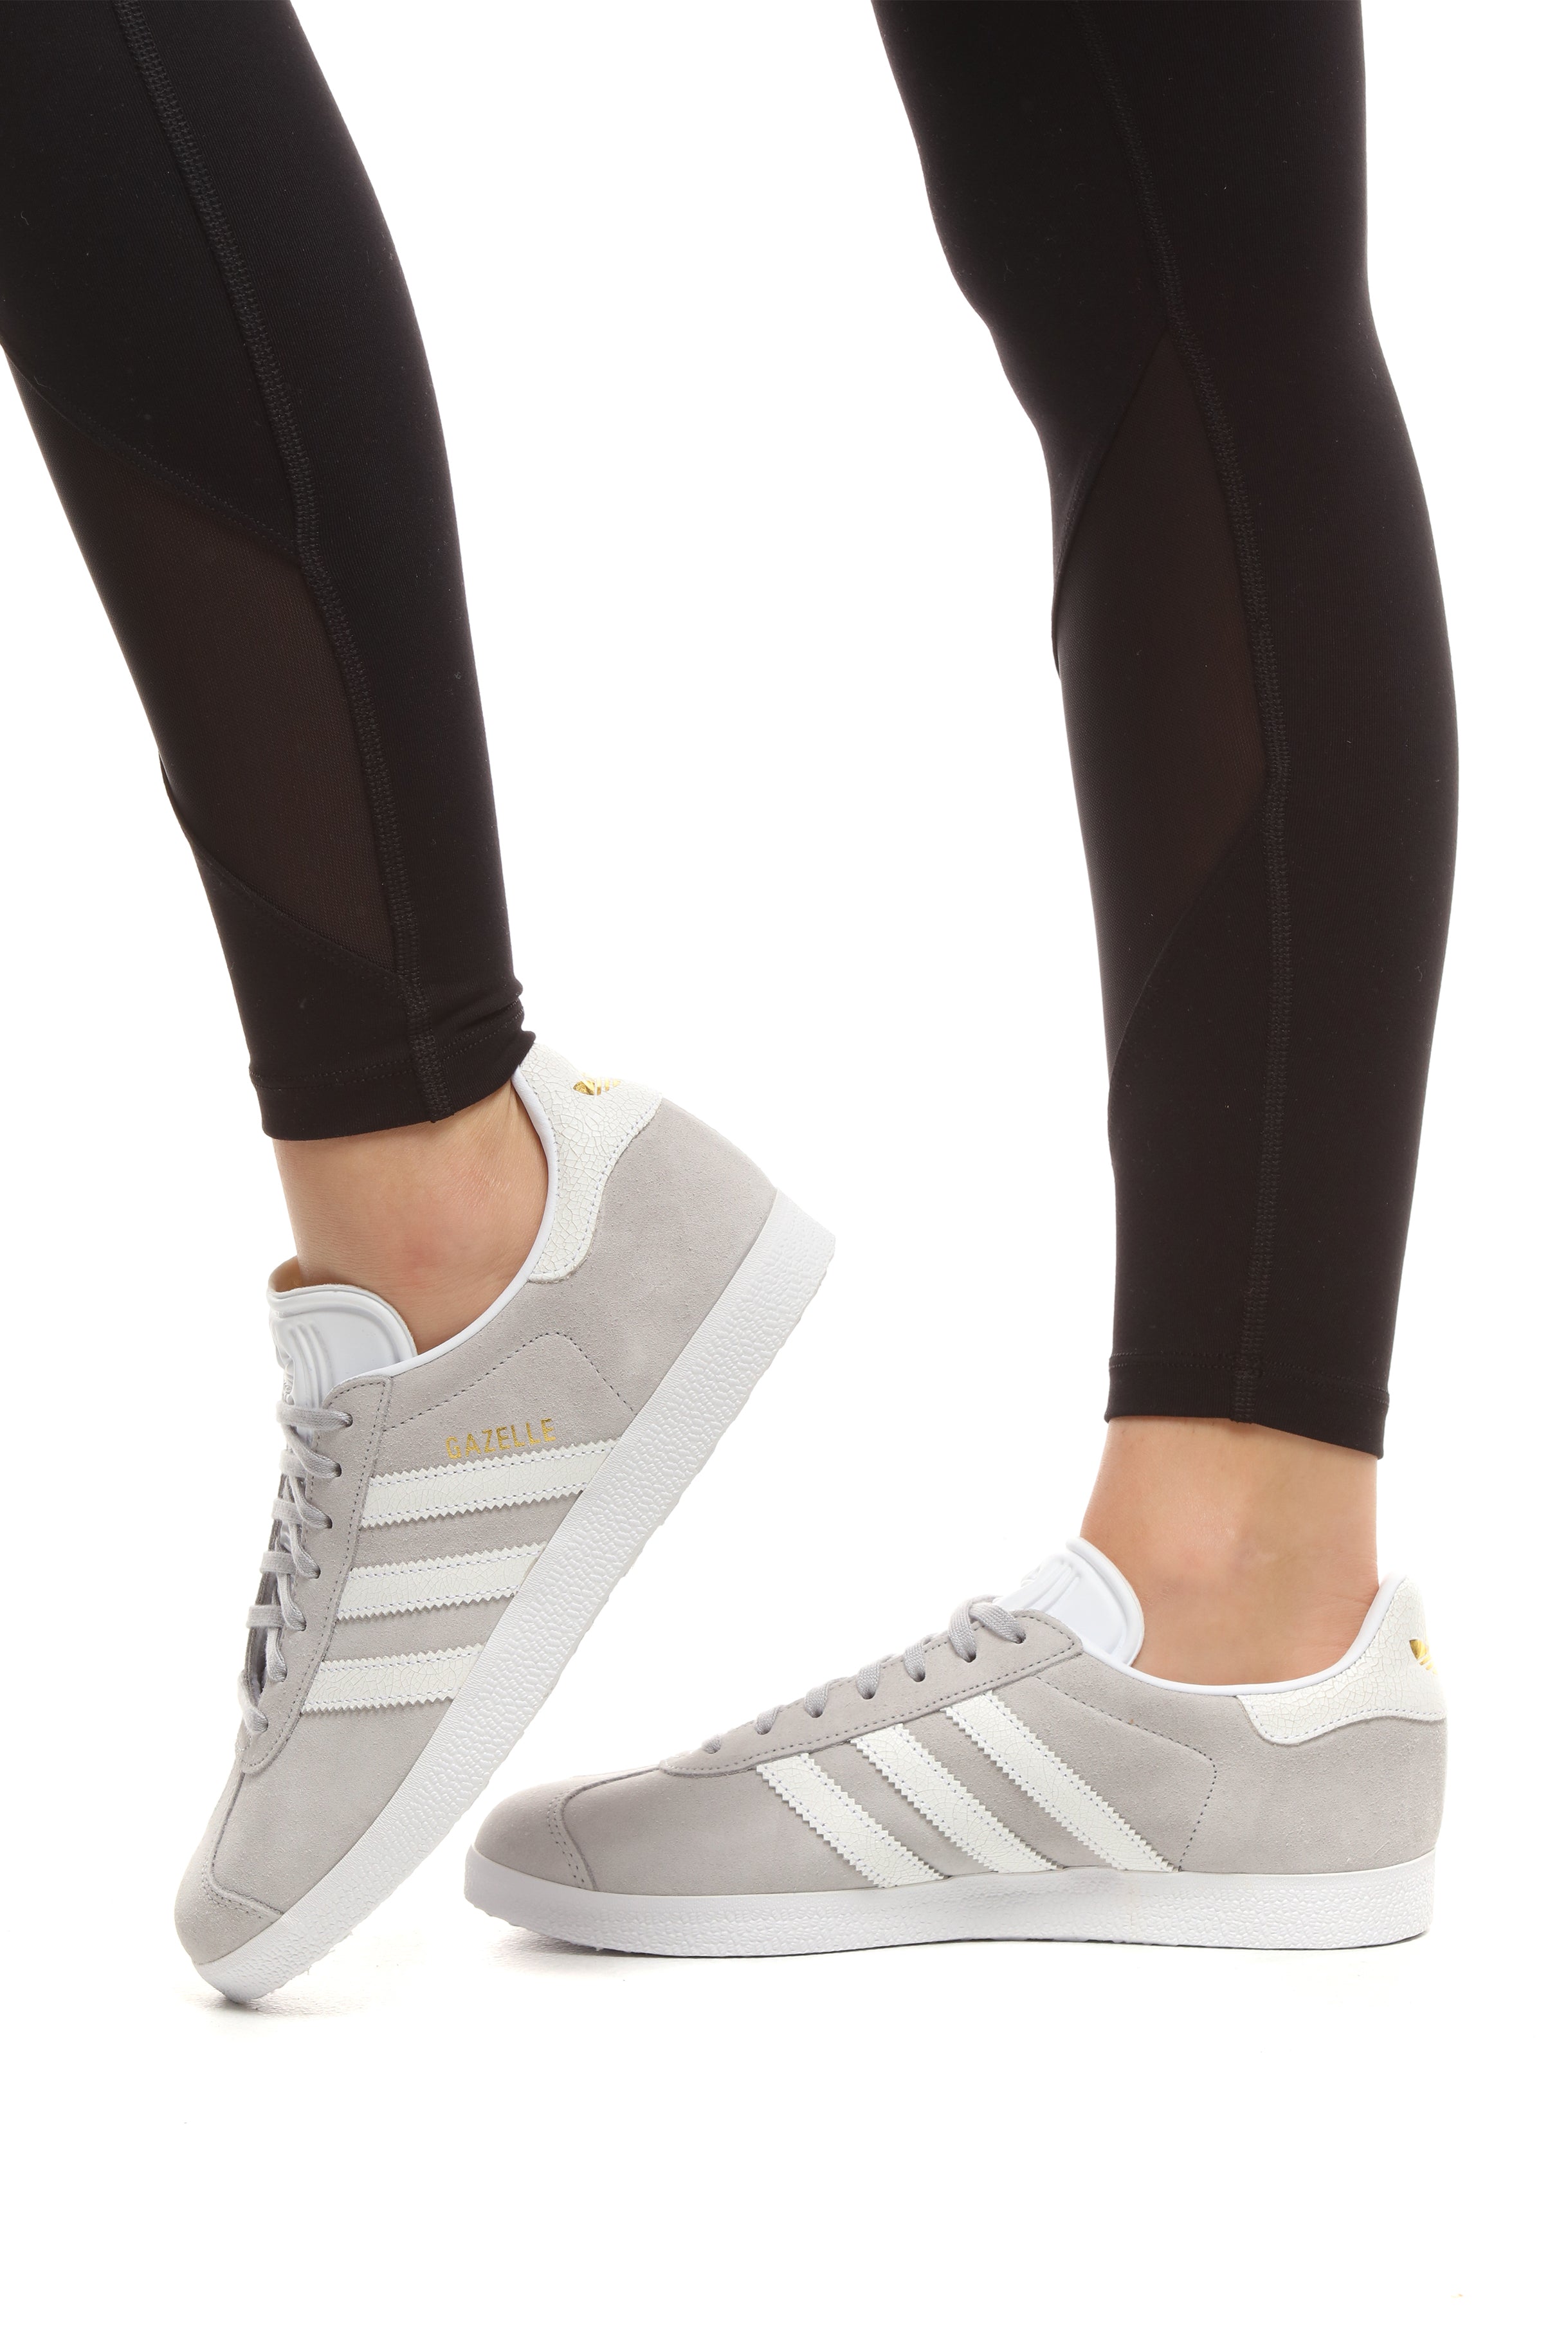 Adidas Women's Gazelle Grey/White 